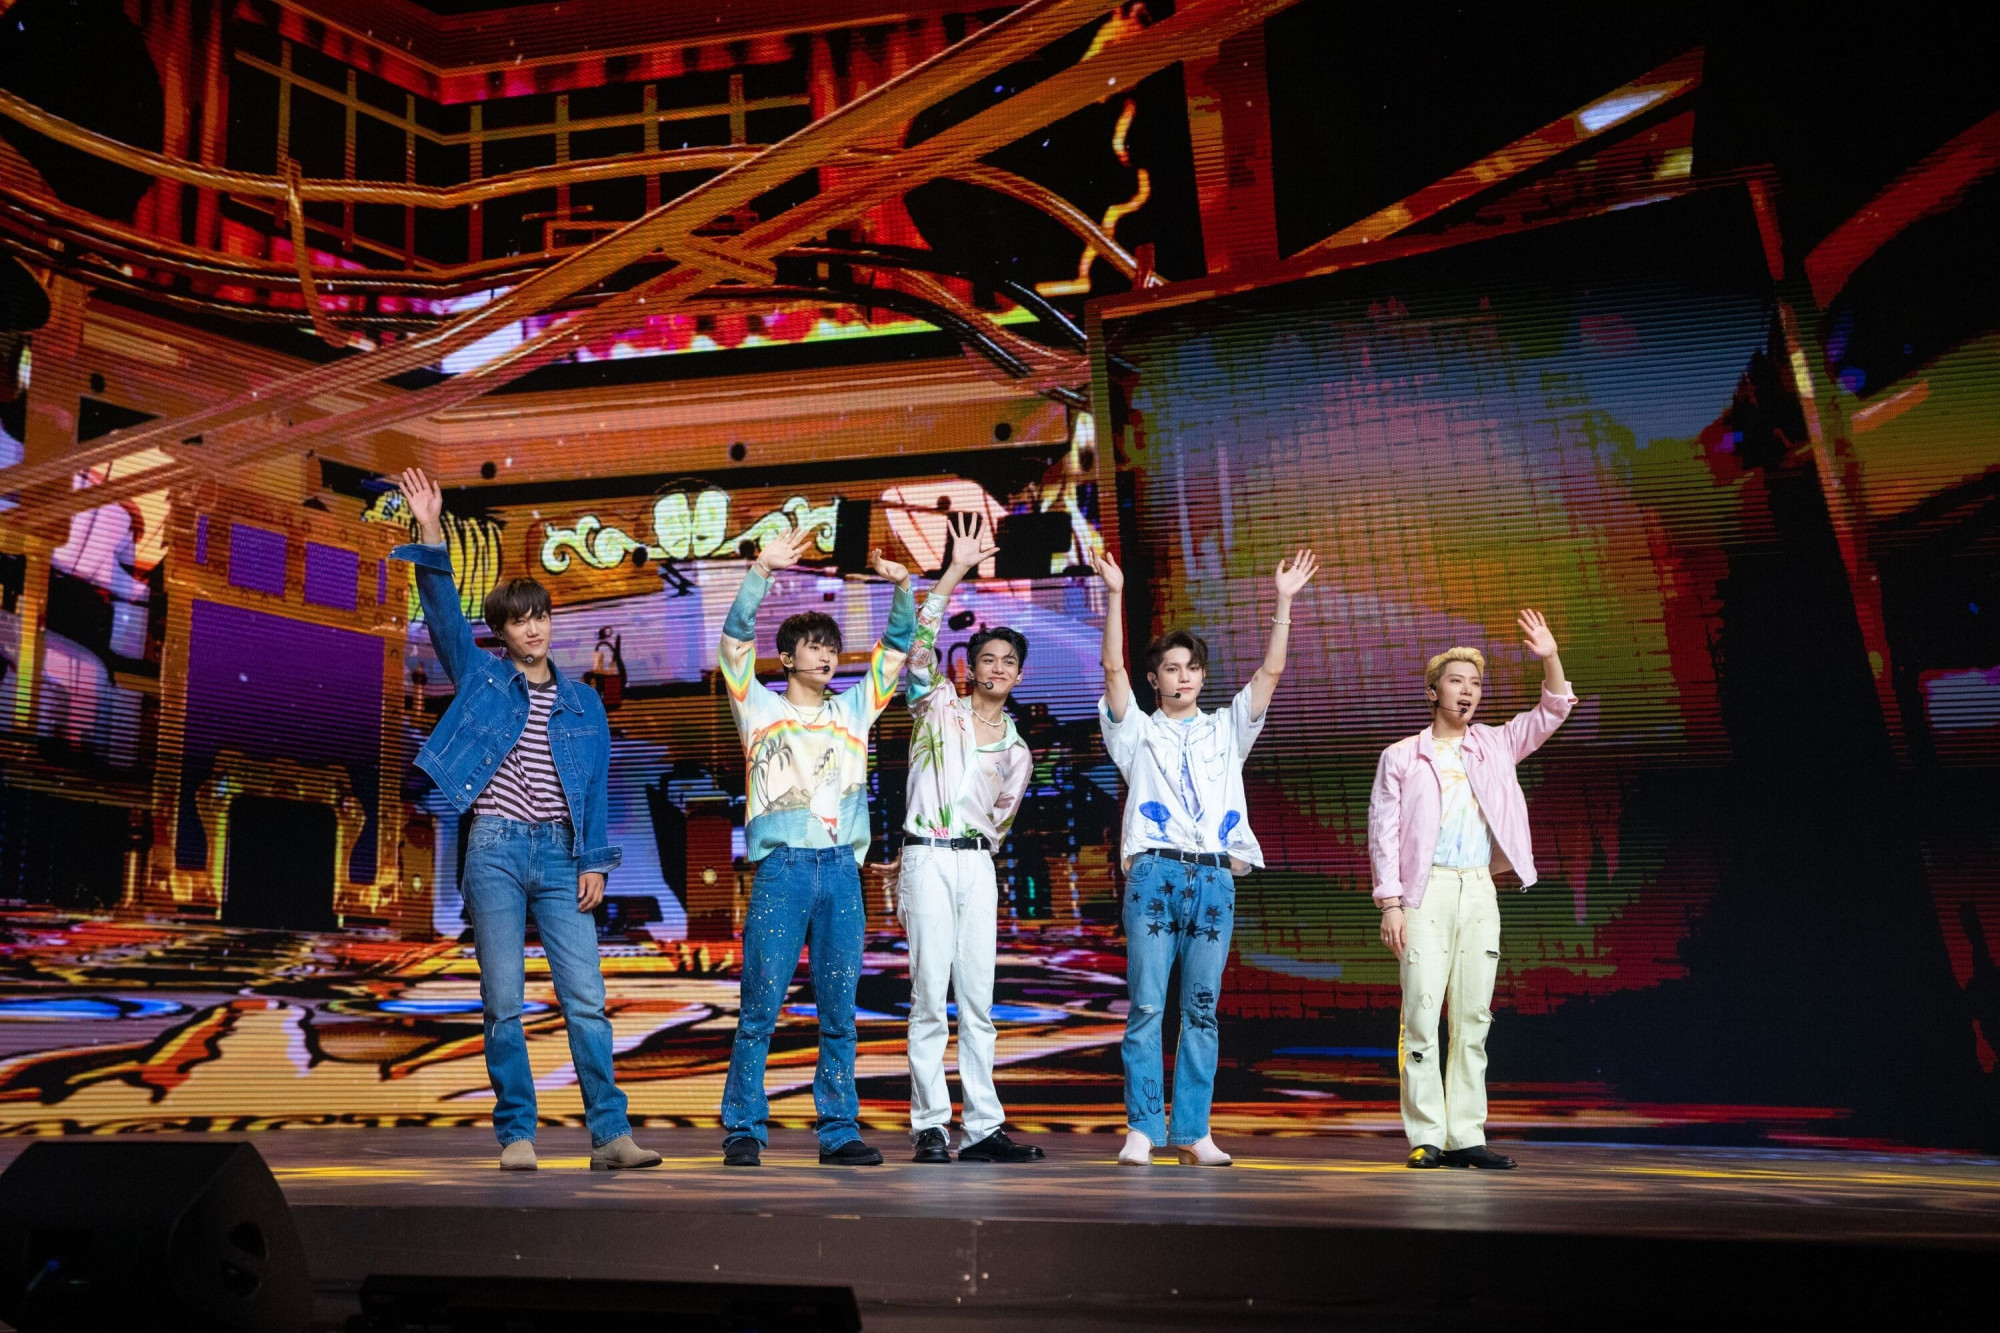 （左）KAI、Mark、Lucas、泰容以及Ten。其中，KAI因EXO队友Xiumin染疫而进行检测，结果呈阴性，但为安全起见仍自行进行隔离，此为预录的舞台演出。